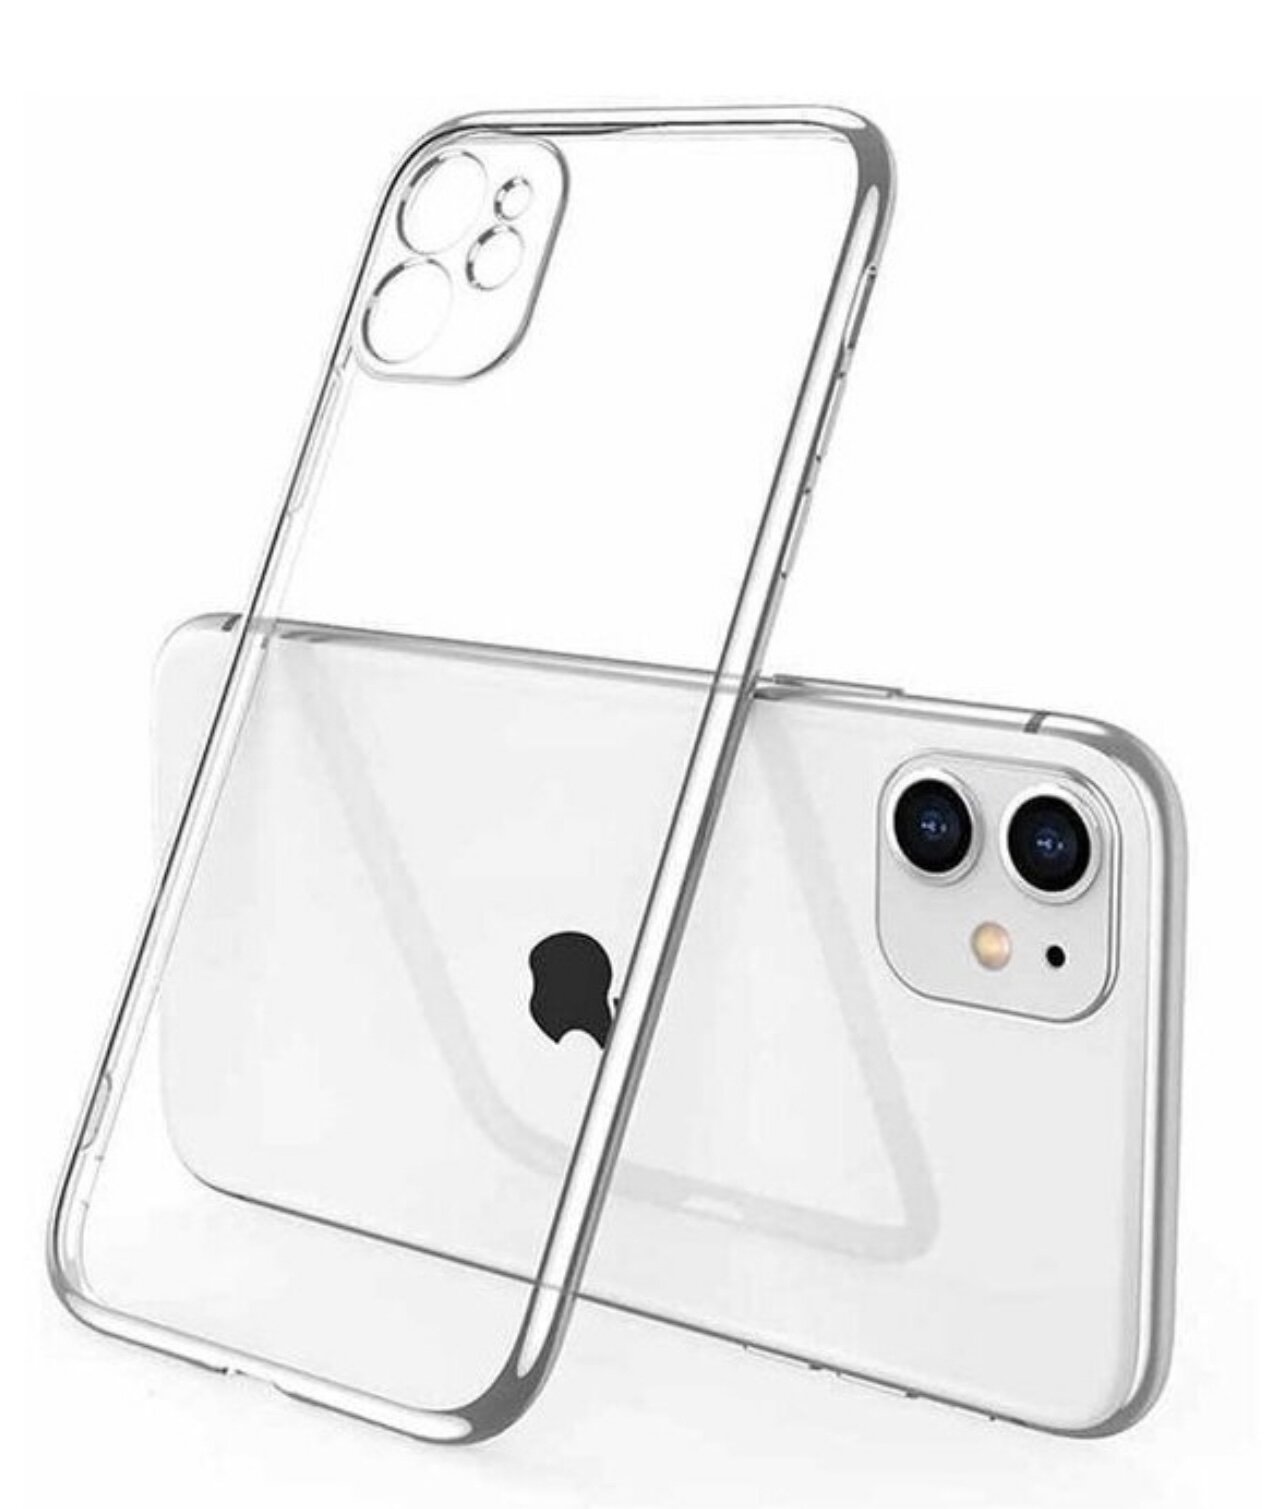 Защитный чехол на iPhone 11 прозрачный / силиконовый / тонкий / с защитой камеры для айфон 11